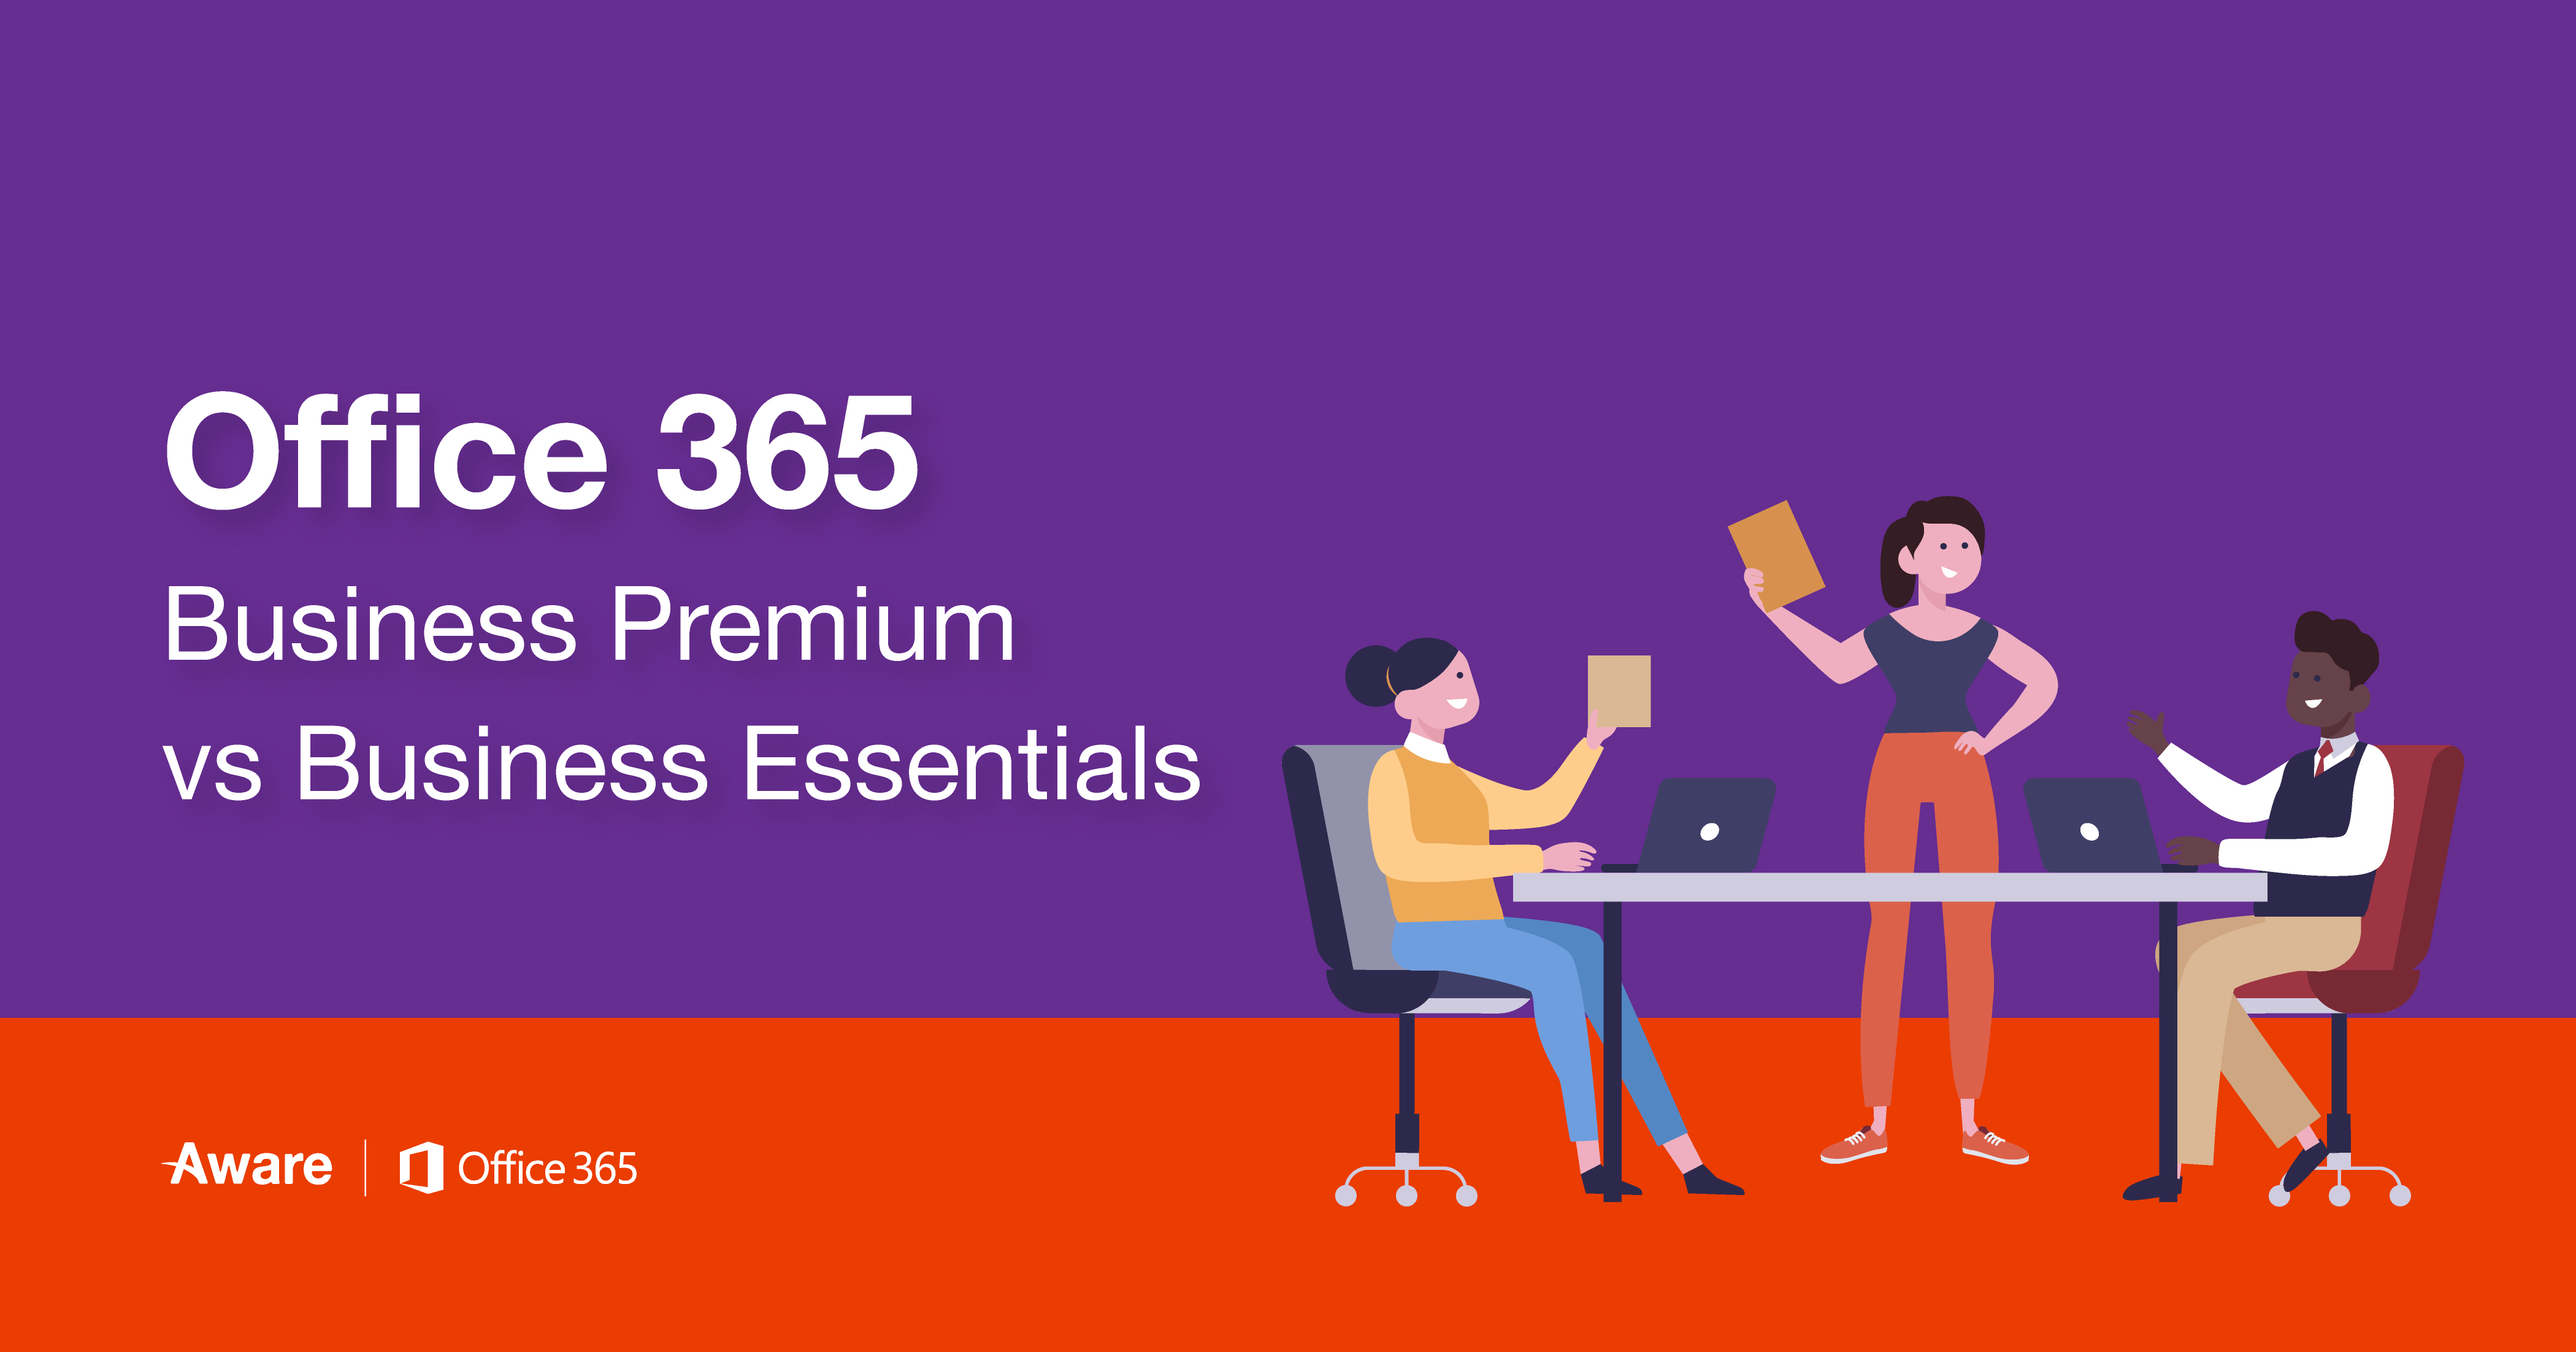 Office 365 Business Premium vs Essentials: